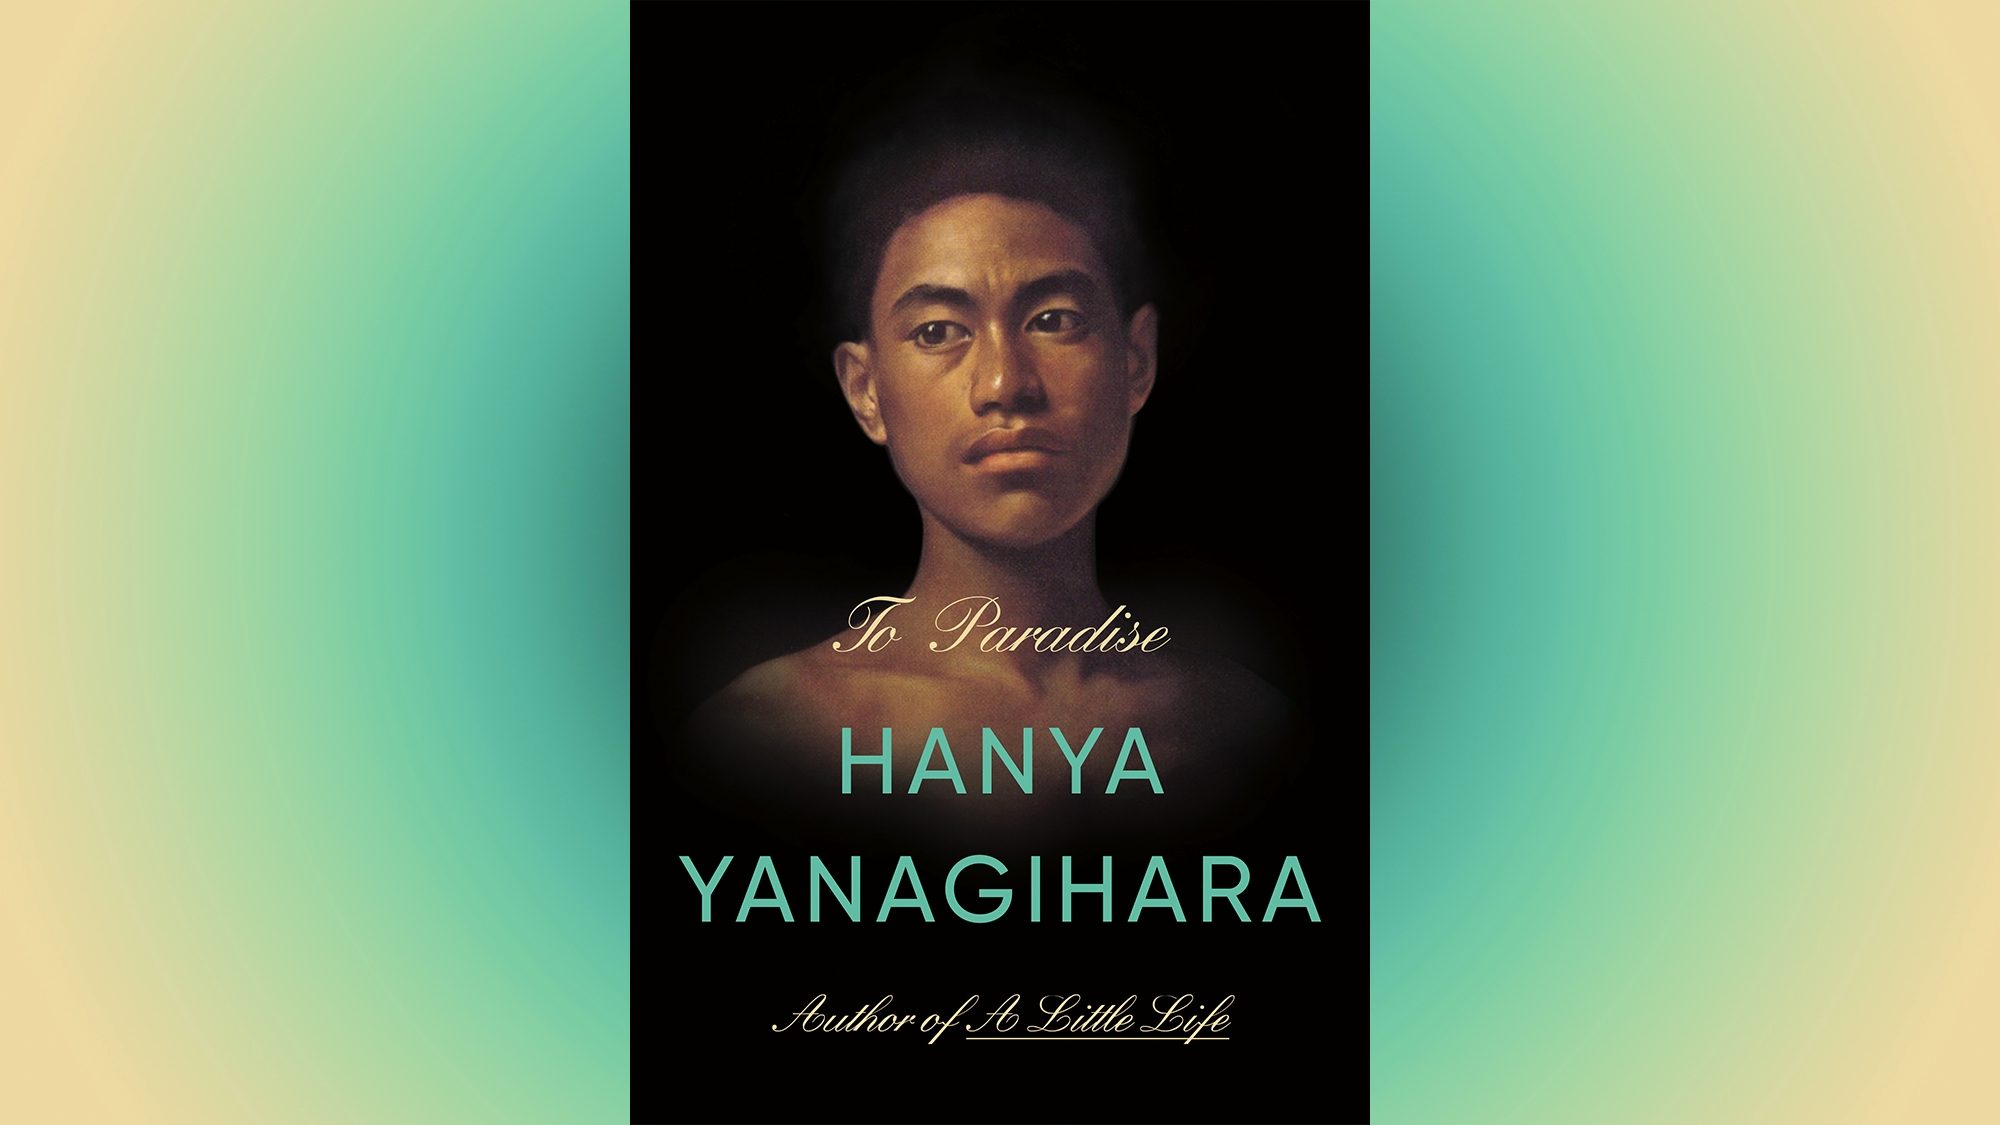 Hanya Yanagihara’s latest epic, To Paradise, is a muddled slog